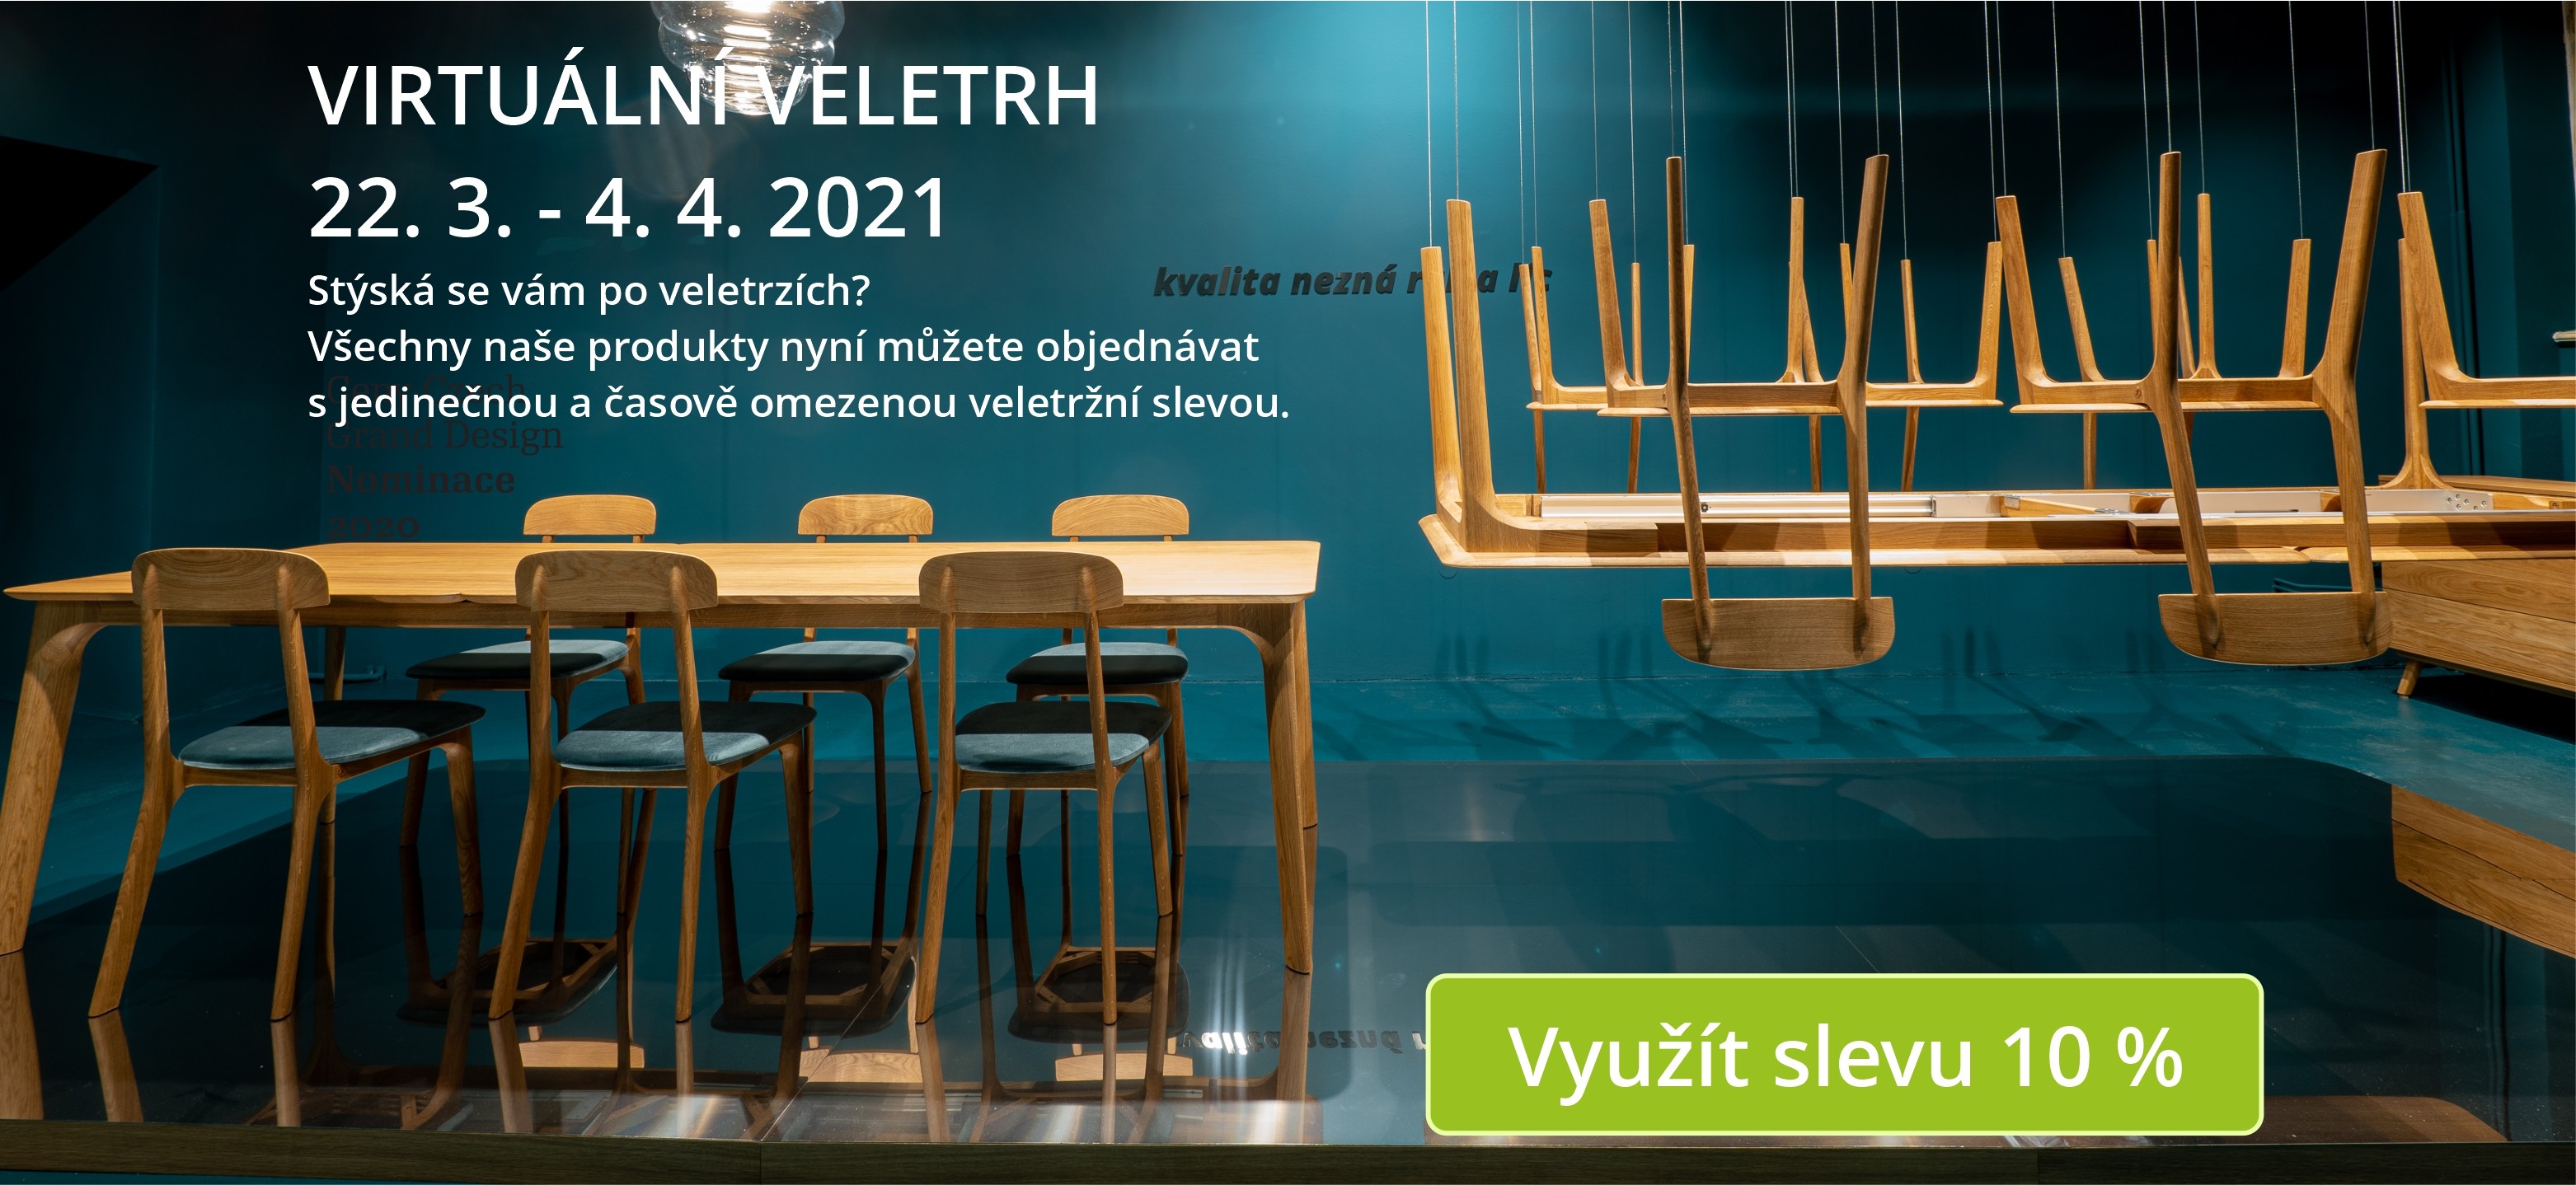 Od 22. 3. do 4. 4. 2021 se v celé České republice koná virtuální veletrh nábytku.